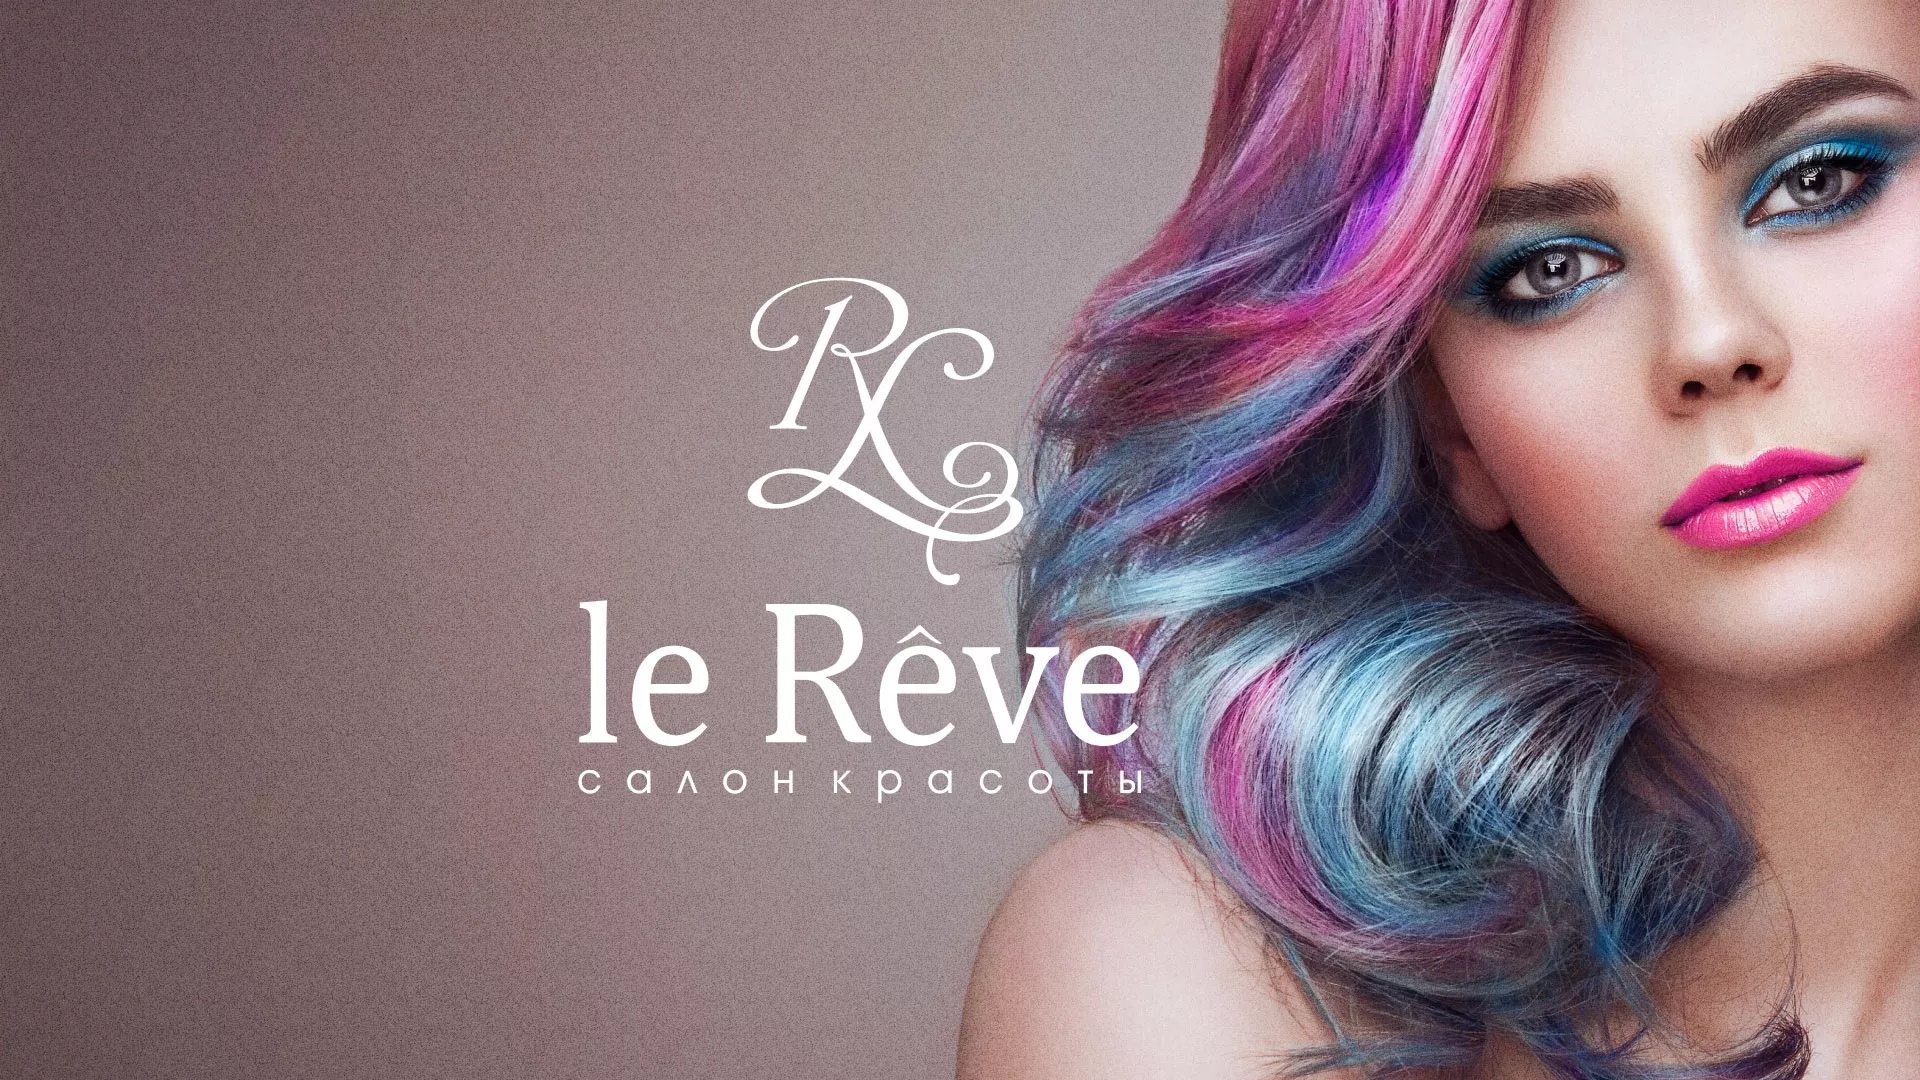 Создание сайта для салона красоты «Le Reve» в Ликино-Дулево